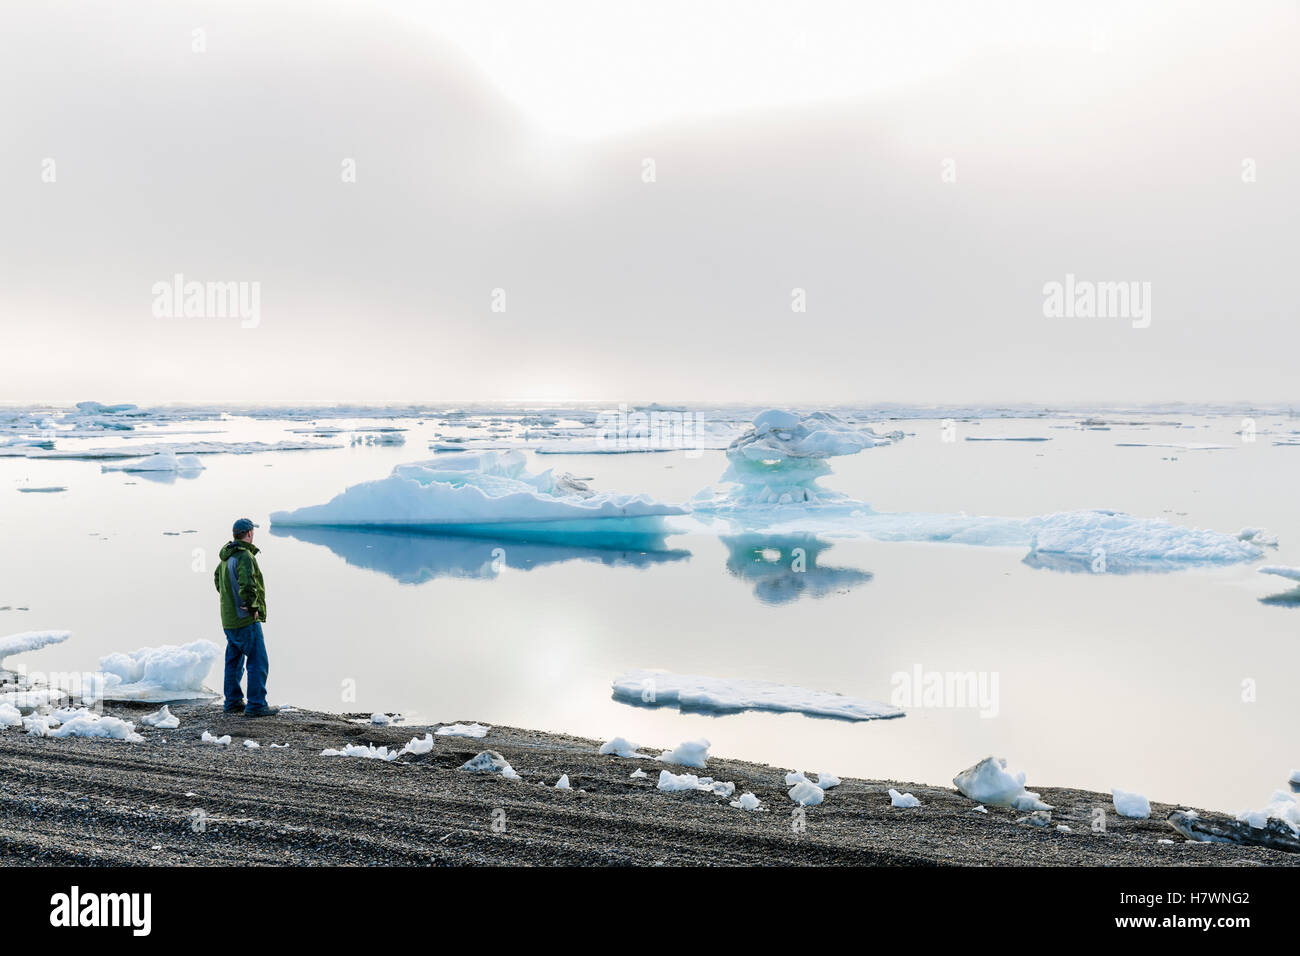 Un homme au bord de l'océan Arctique à l'extérieur, vers le coucher de soleil à travers un épais brouillard, Barrow, versant nord, l'Alaska arctique, USA, l'été Banque D'Images